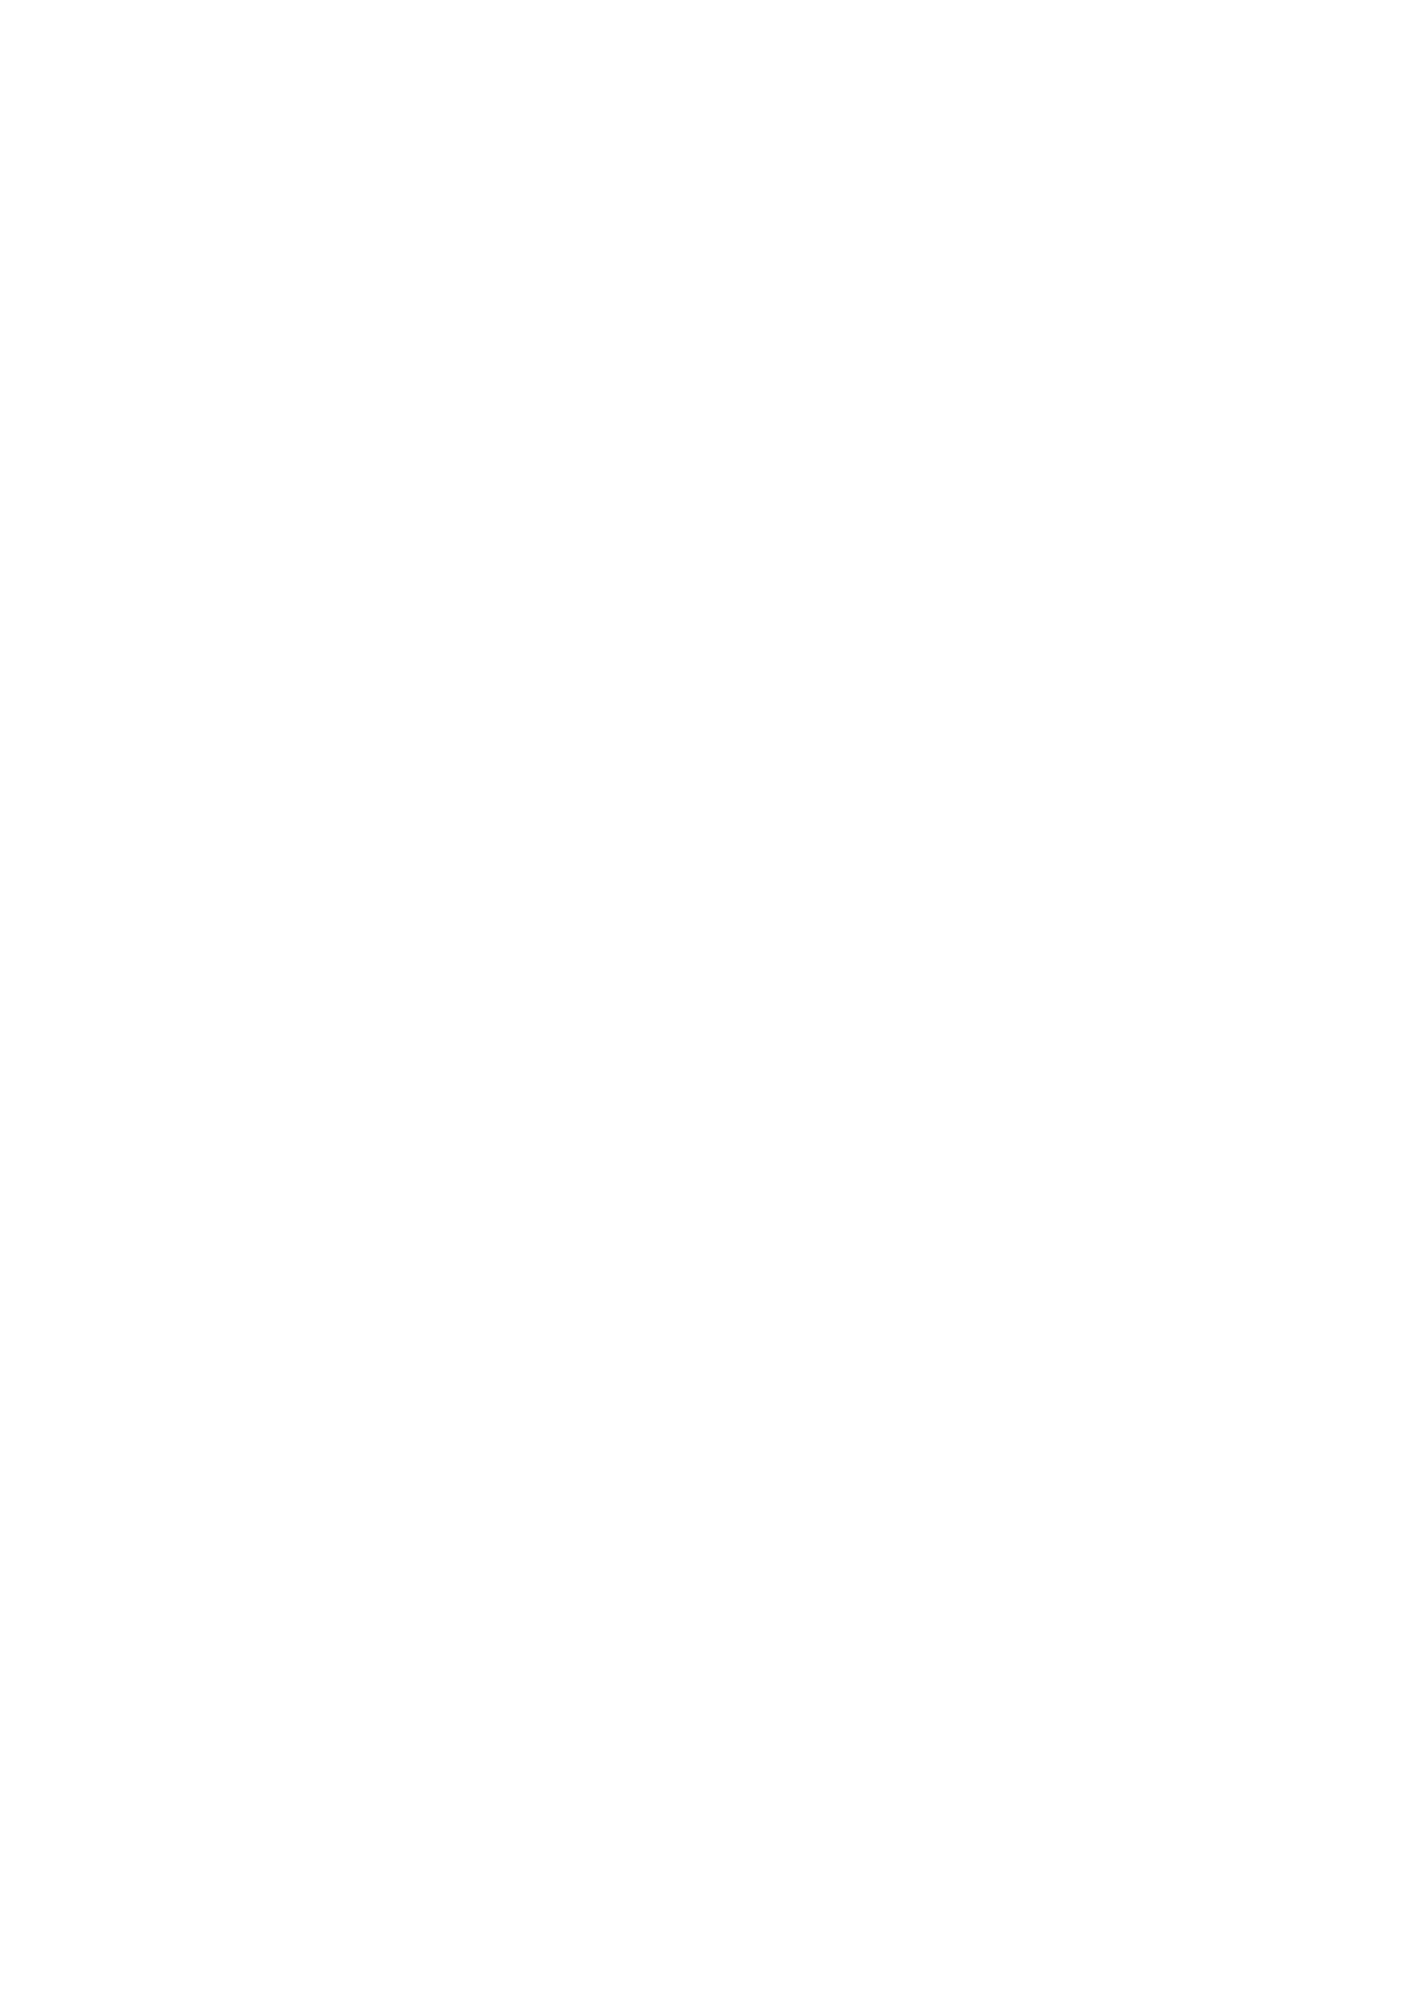 [赤兎 (復八磨直兎)] キリト君がムッツリだった件 (ソードアート・オンライン) [DL版]